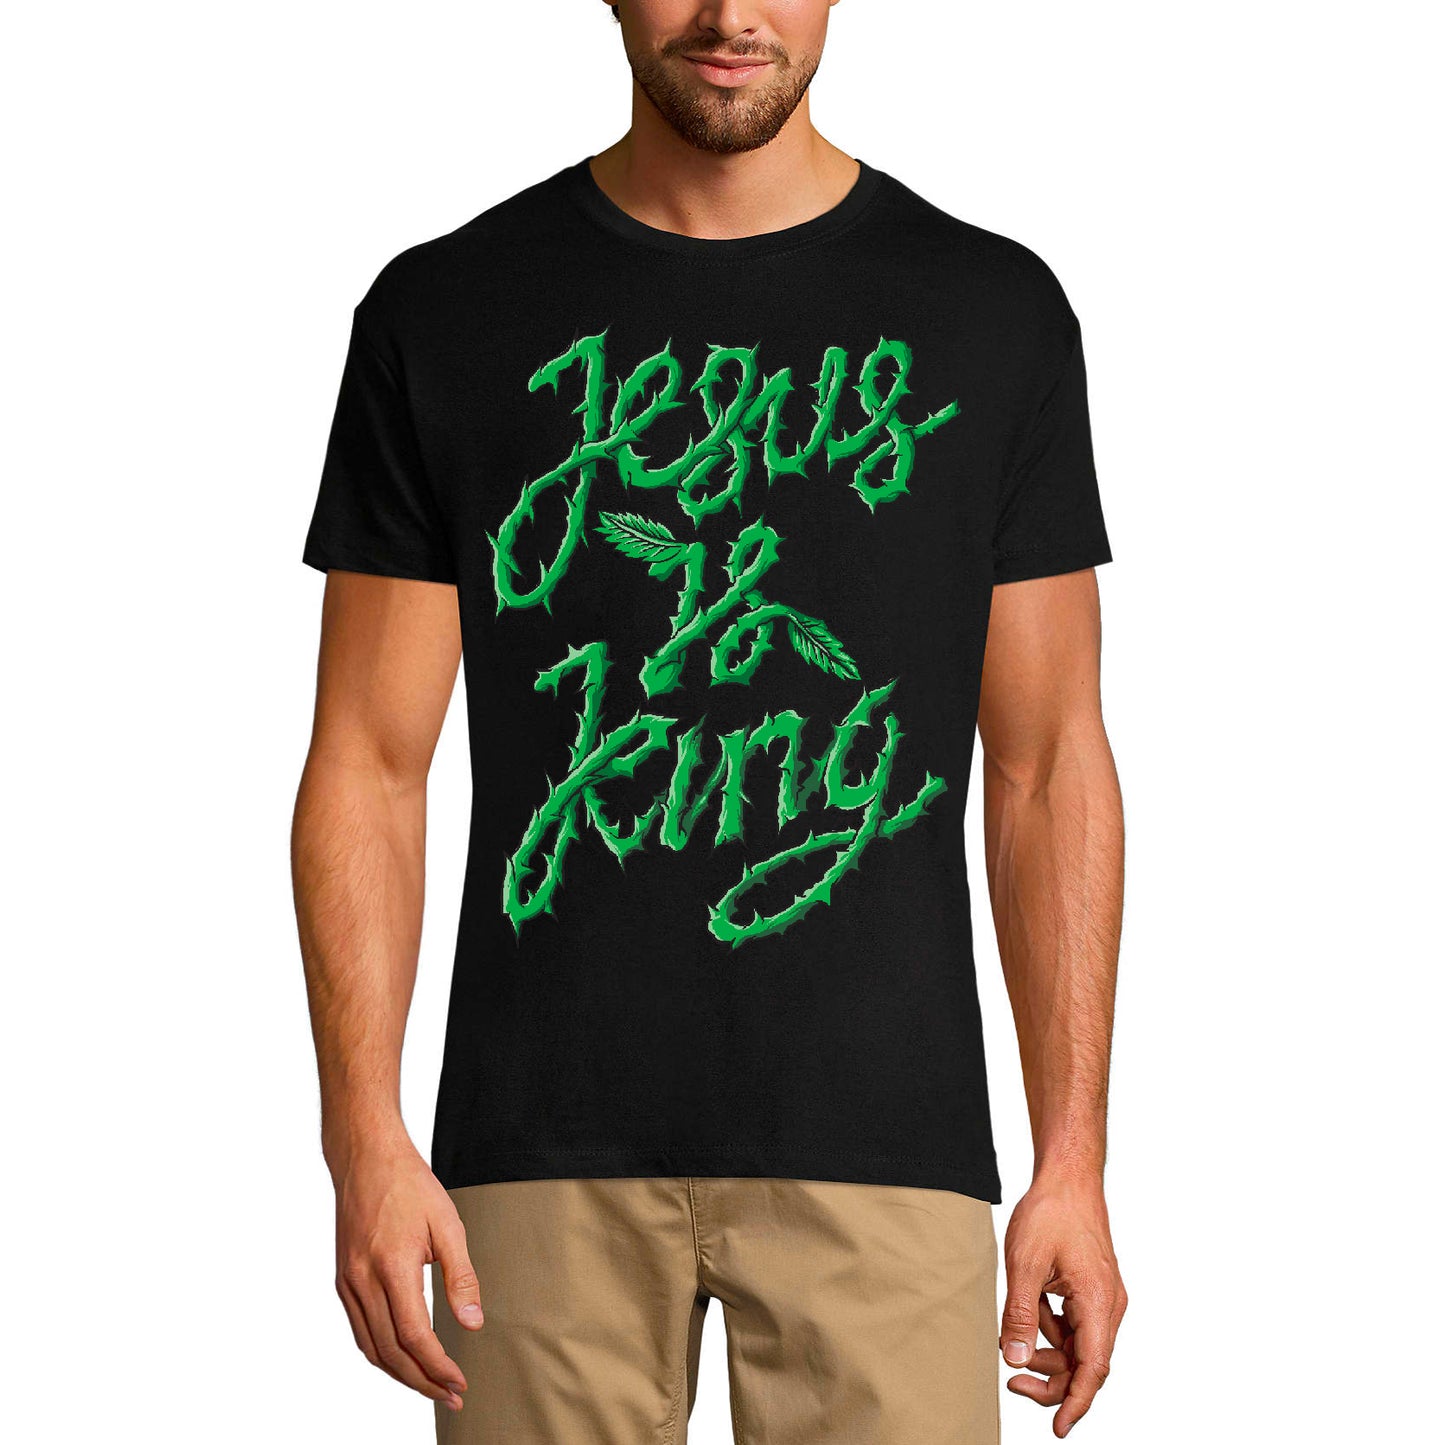 ULTRABASIC Men's Religious T-Shirt Jesus is King - God Jesus Christ Shirt